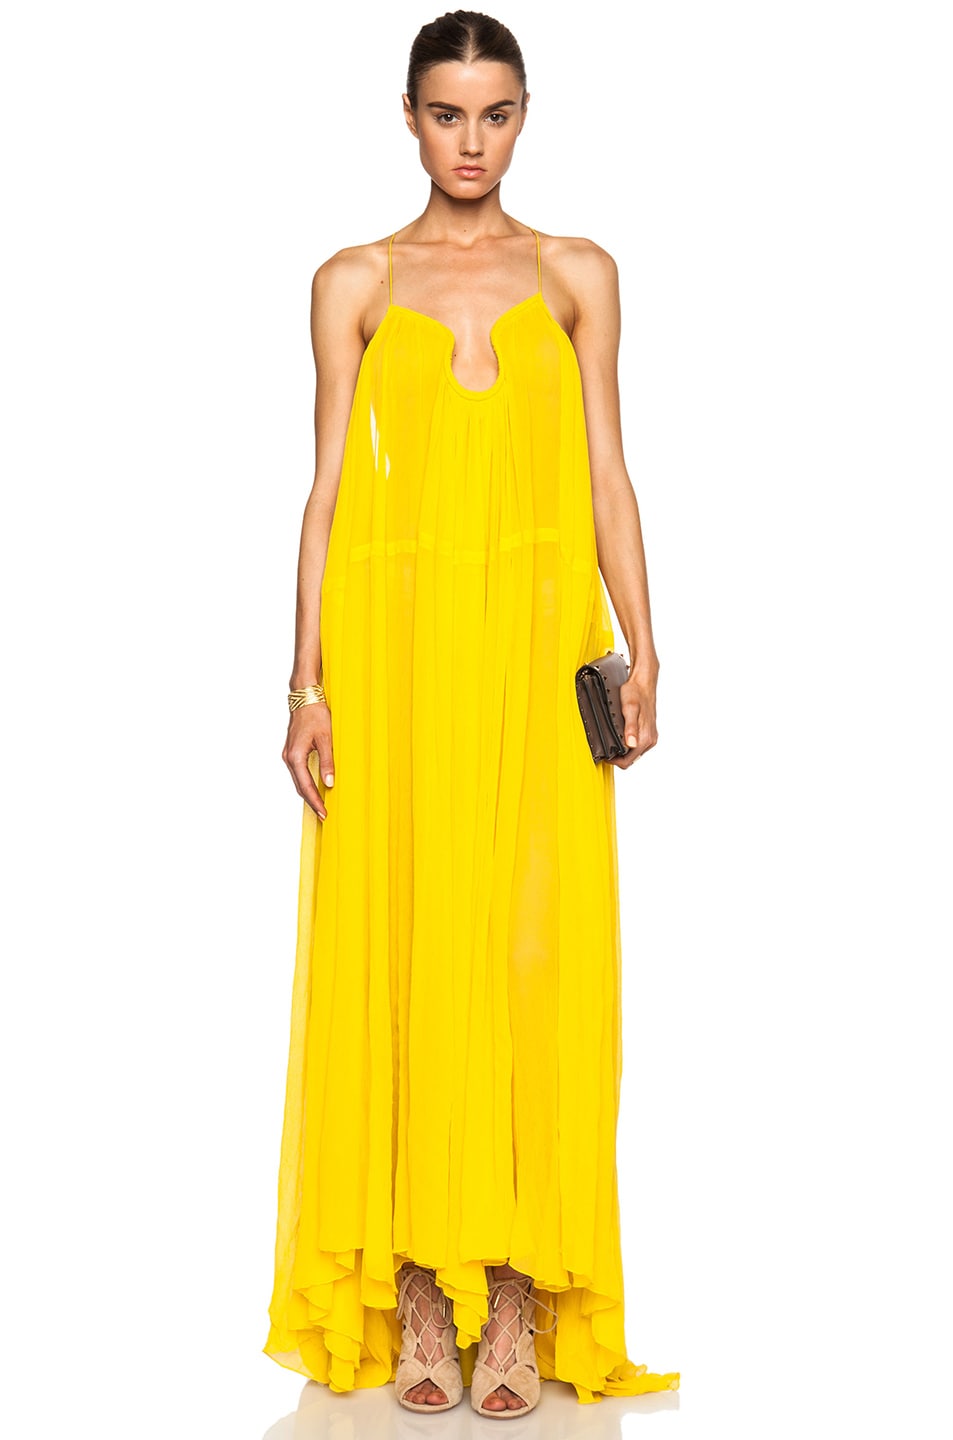 Chloe Silk Crepon Maxi Dress in Corn Yellow | FWRD